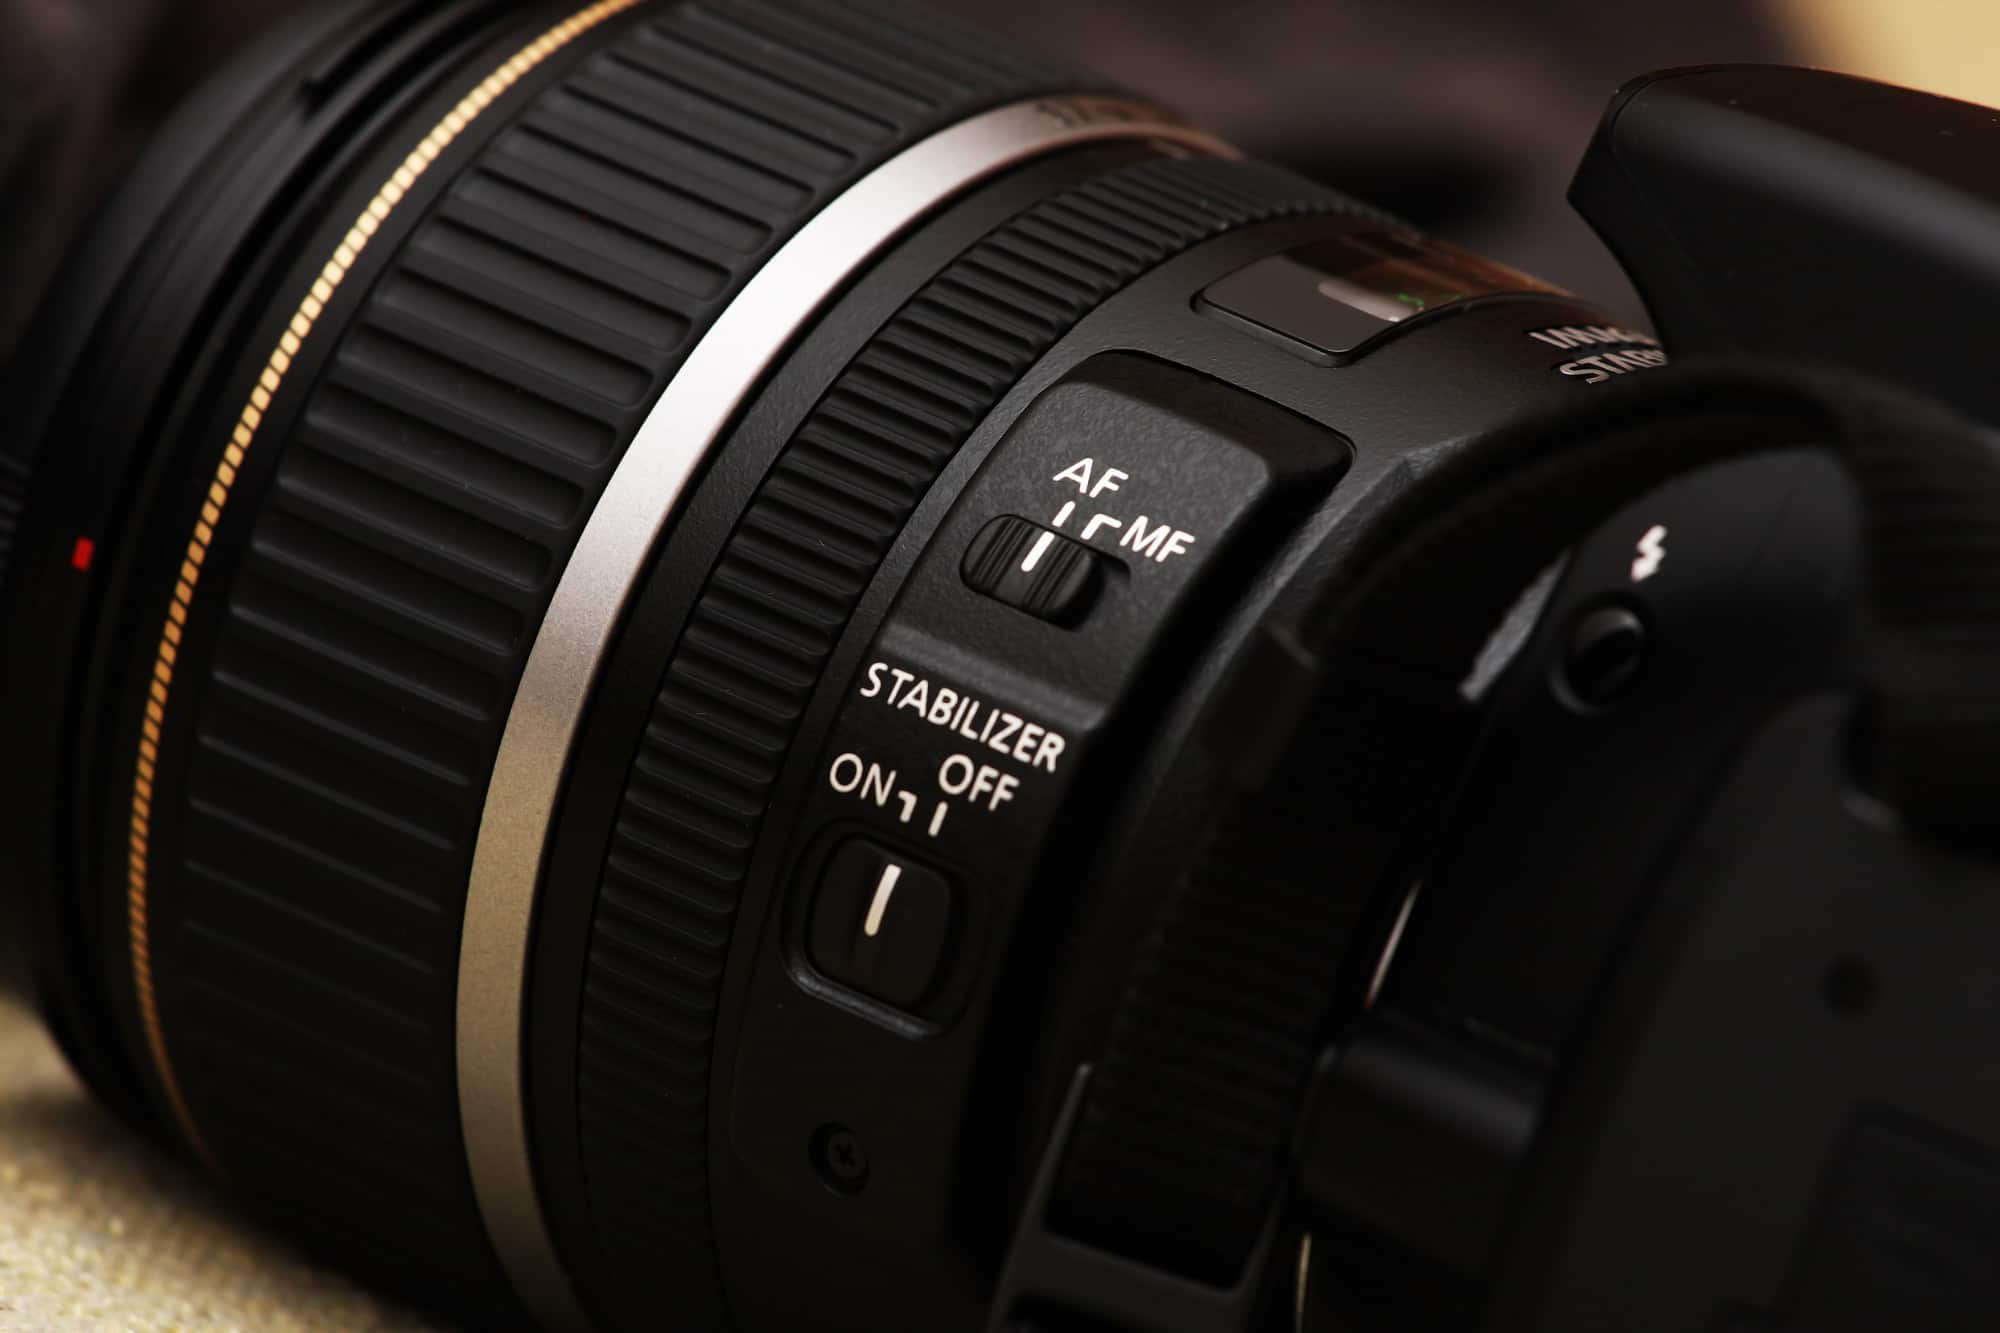 Canon lens autofocus and manual focus mode button